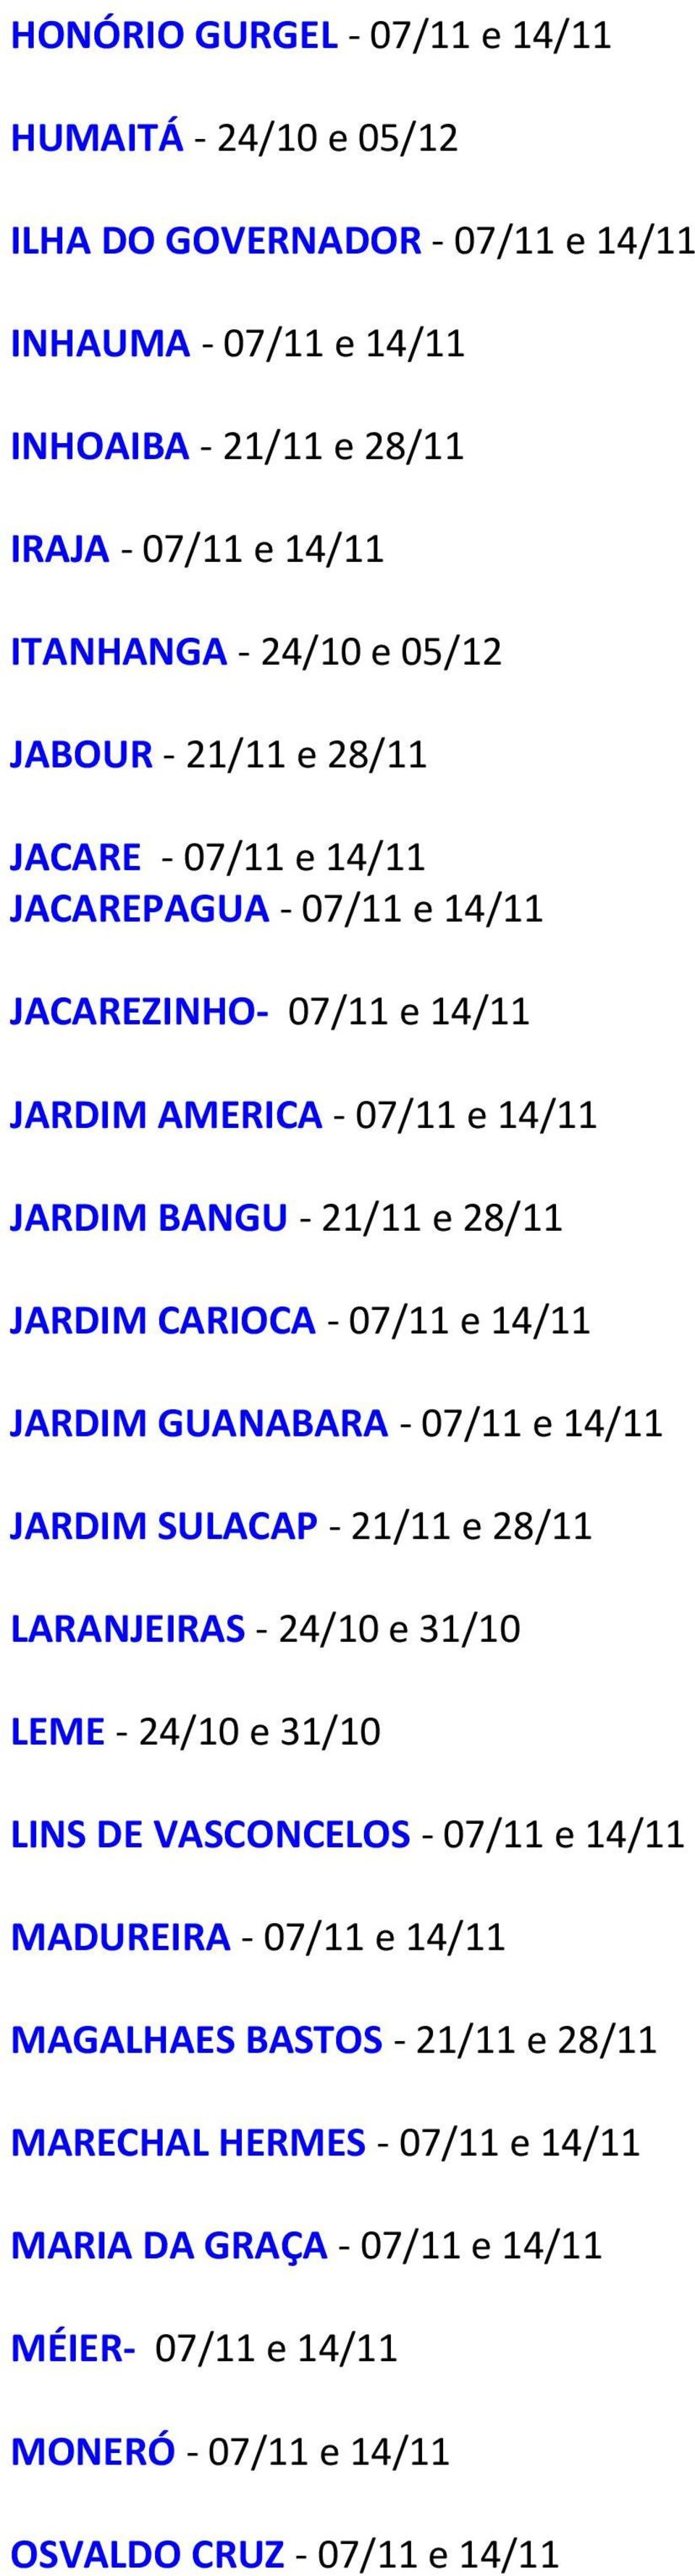 CARIOCA - 07/11 e 14/11 JARDIM GUANABARA - 07/11 e 14/11 JARDIM SULACAP - 21/11 e 28/11 LARANJEIRAS - 24/10 e 31/10 LEME - 24/10 e 31/10 LINS DE VASCONCELOS - 07/11 e 14/11